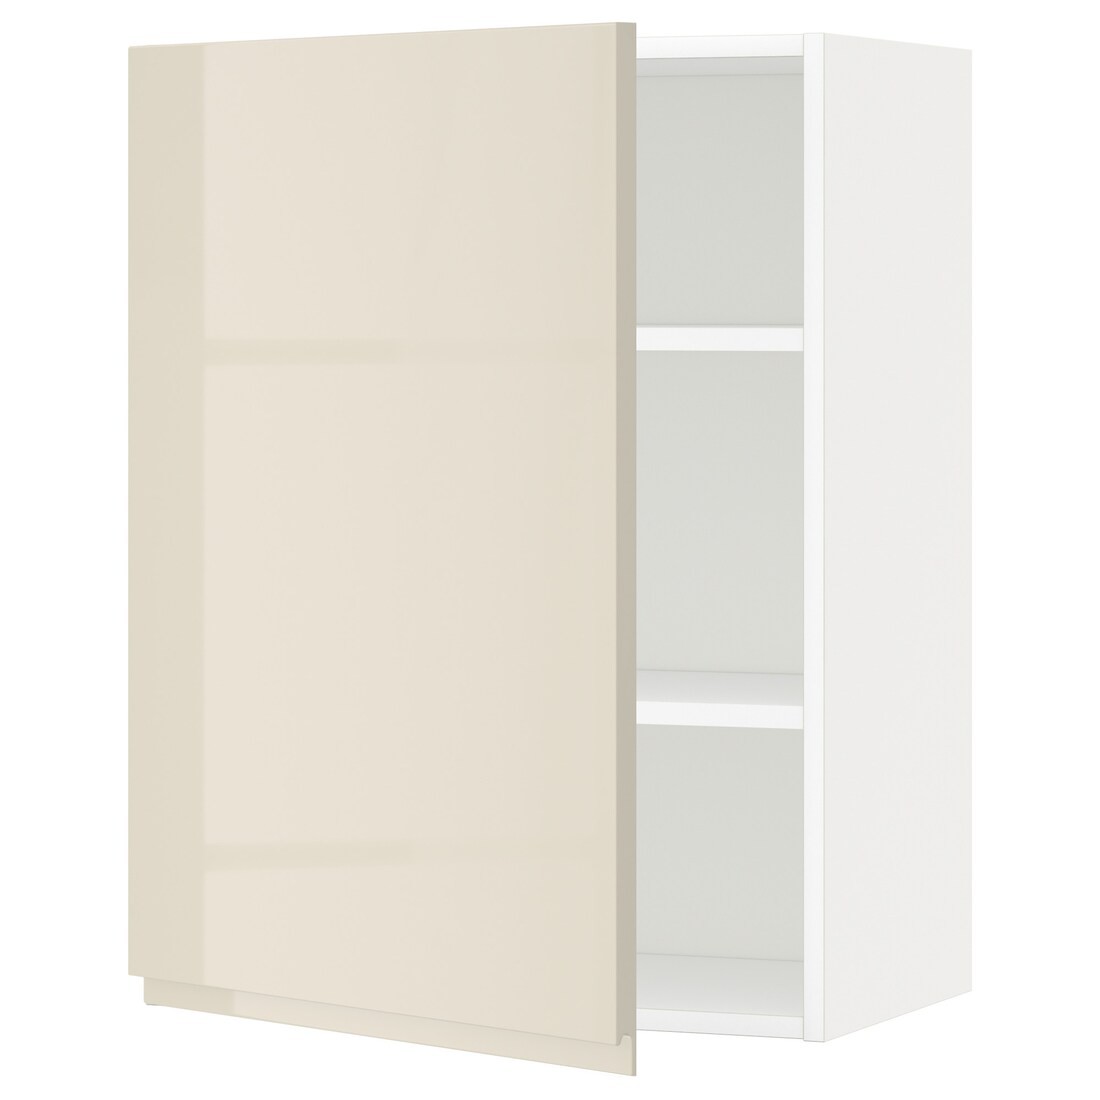 IKEA METOD МЕТОД Шкаф навесной с полками, белый / Voxtorp глянцевый светло-бежевый, 60x80 см 59459100 594.591.00